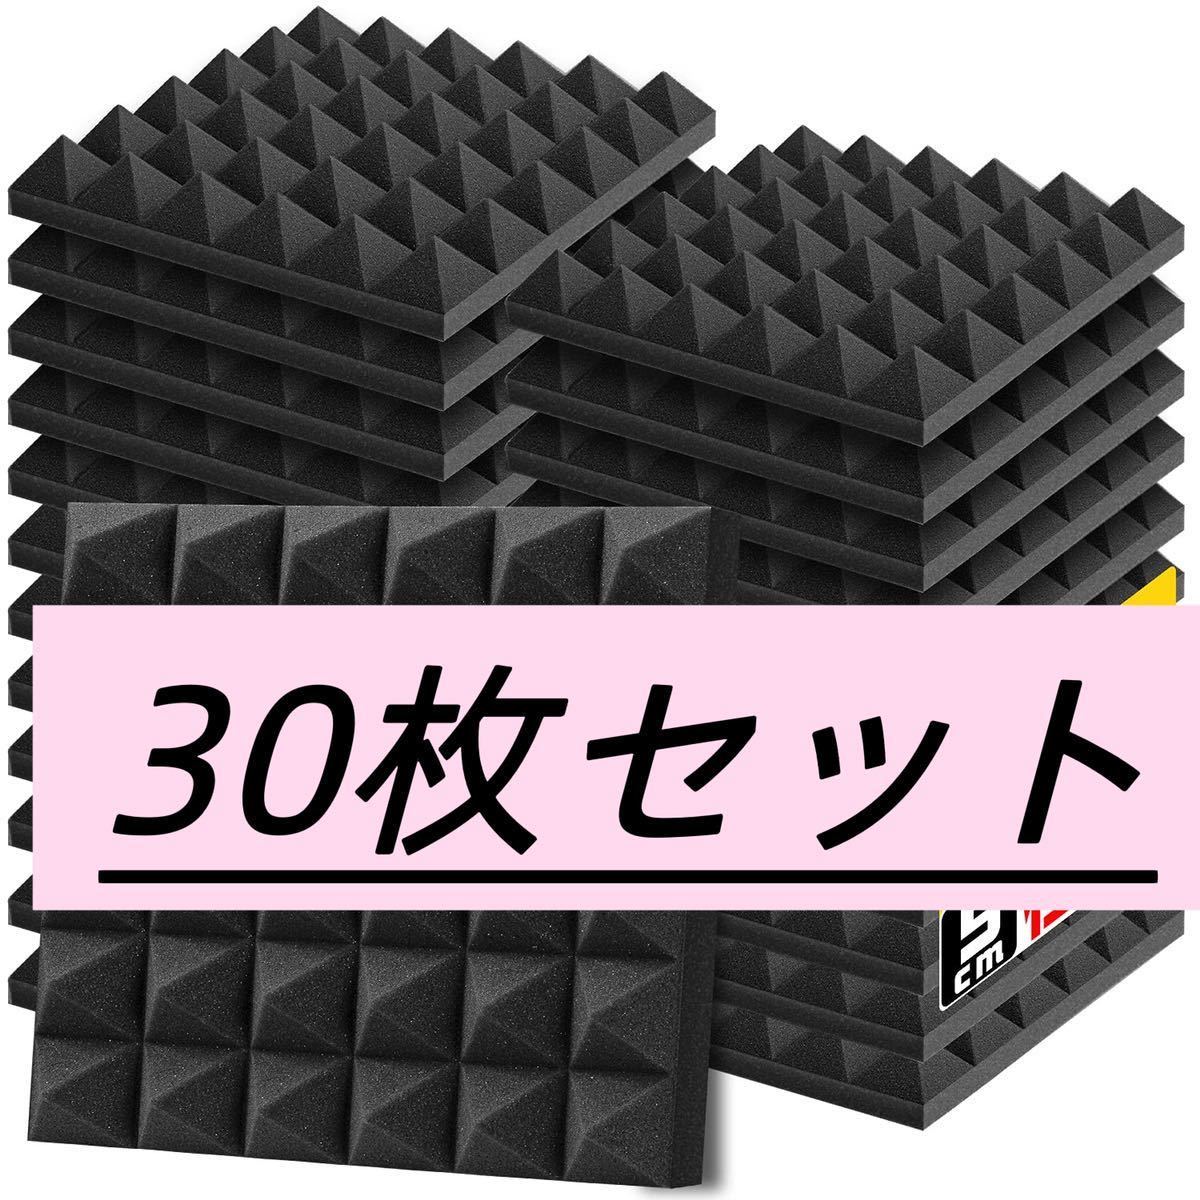 吸音材 30*30*5cm 極厚 ウレタンフォーム 吸音対策 室内装飾 楽器 消音 騒音 防音 吸音パネル 両面テープ付き (30枚,  黒(ピラミッド形))